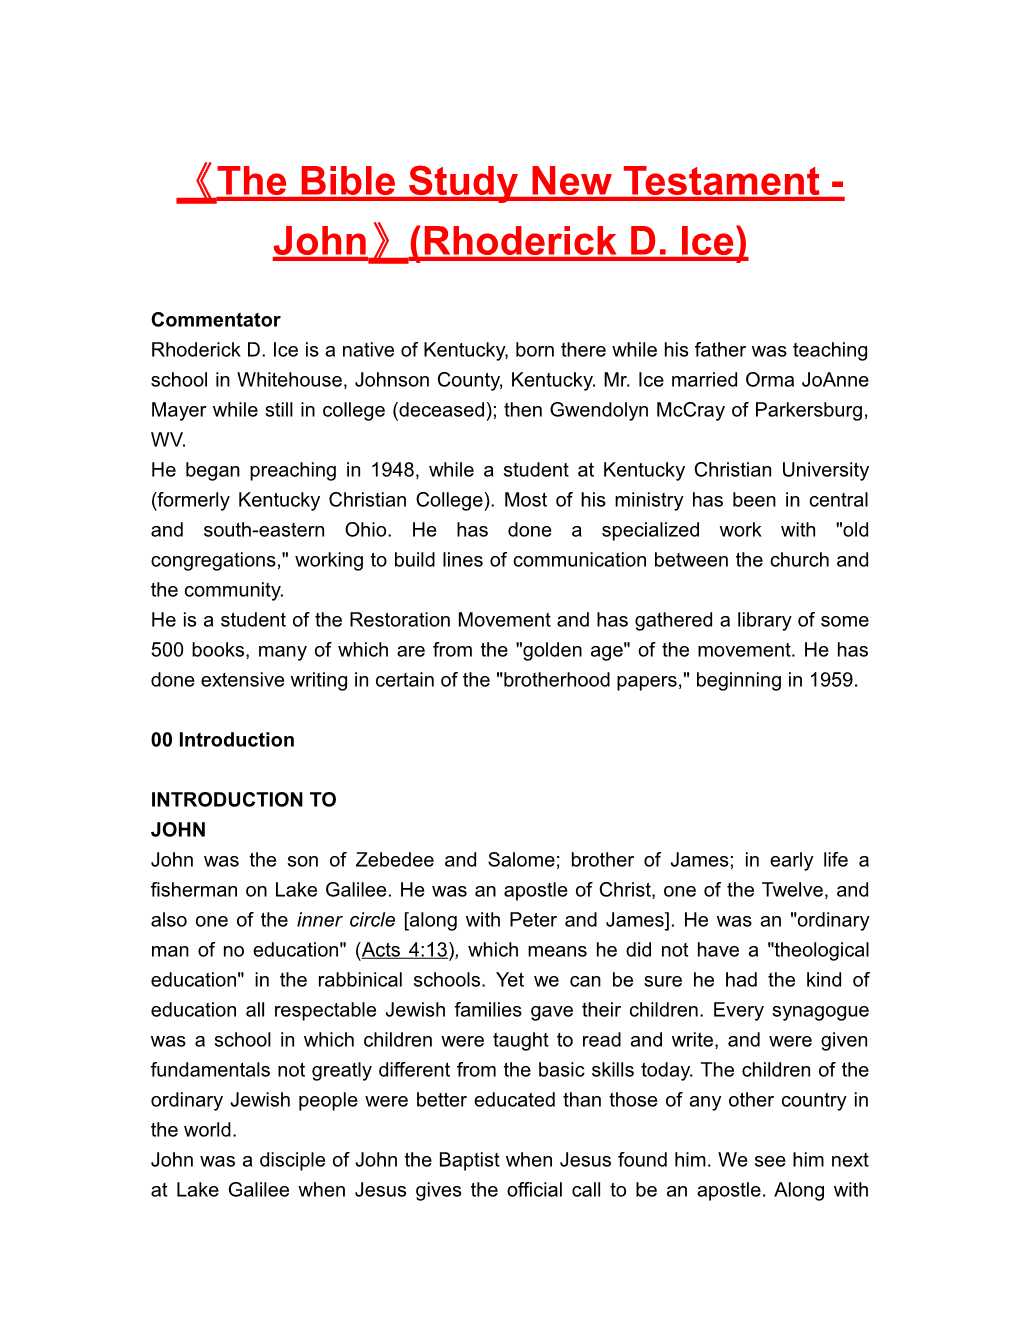 The Bible Study New Testament-John (Rhoderick D. Ice)